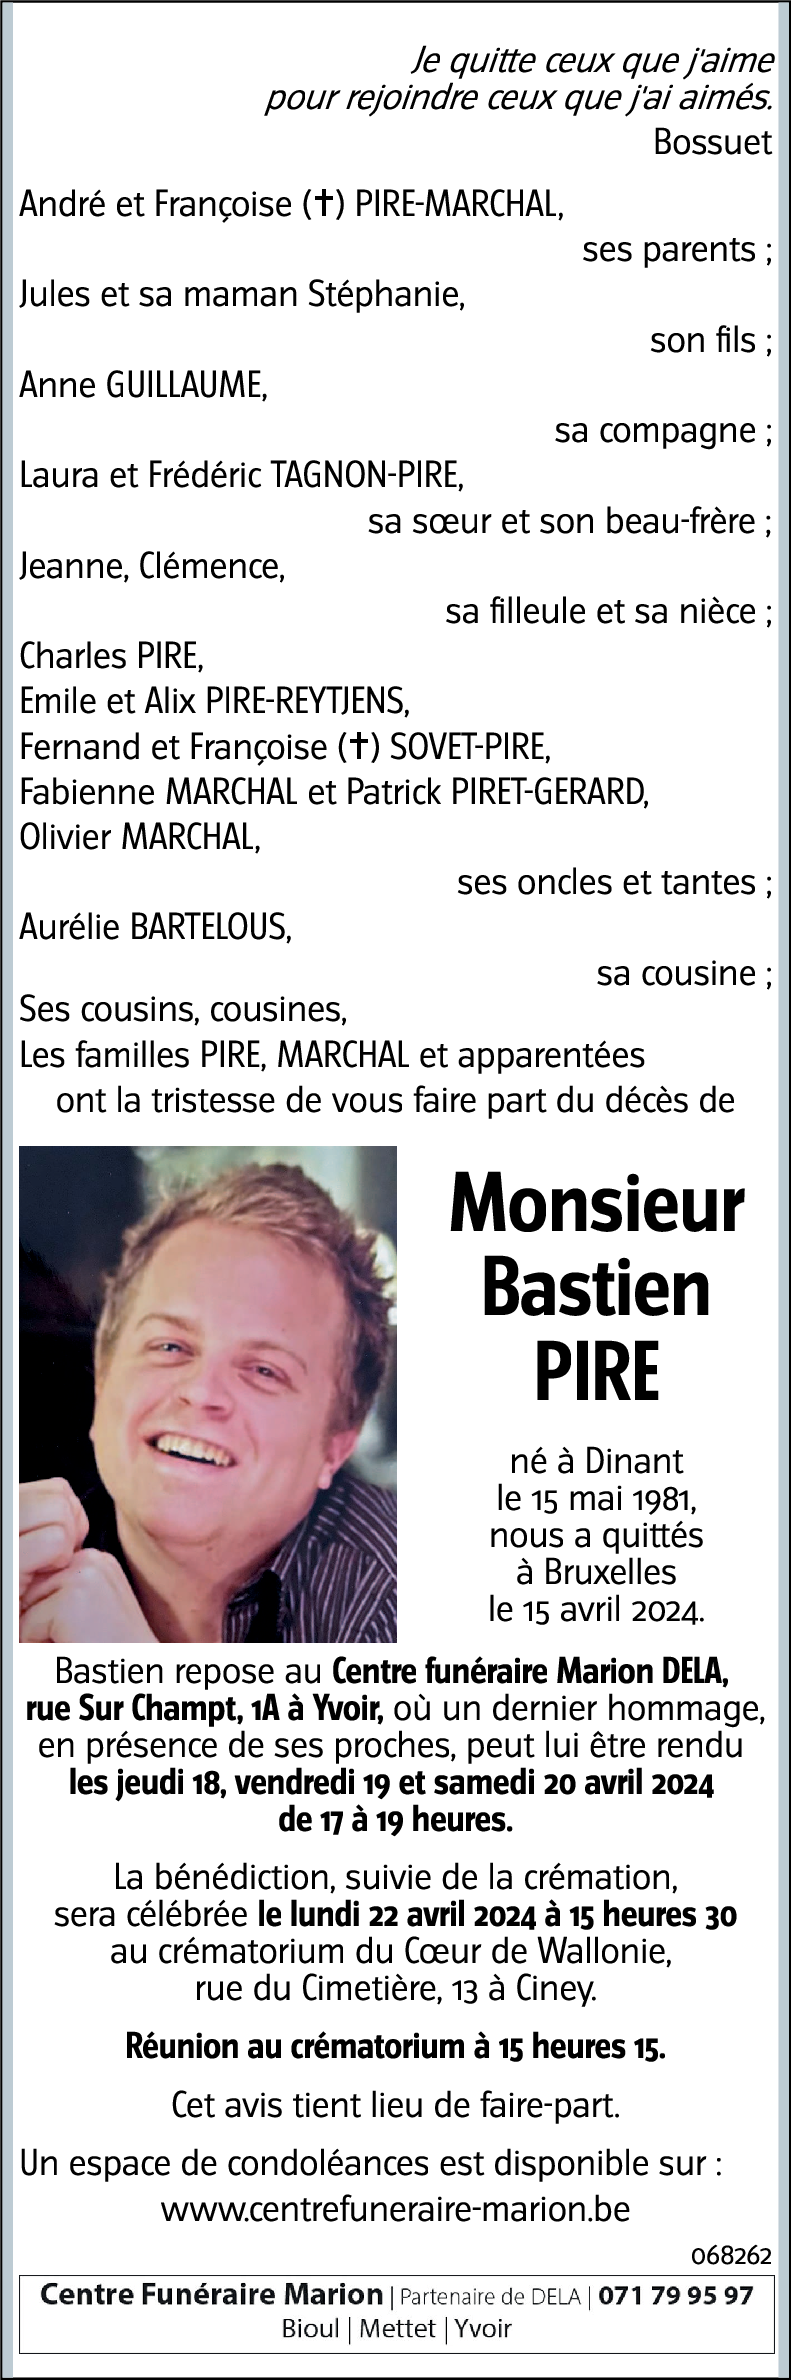 Bastien PIRE